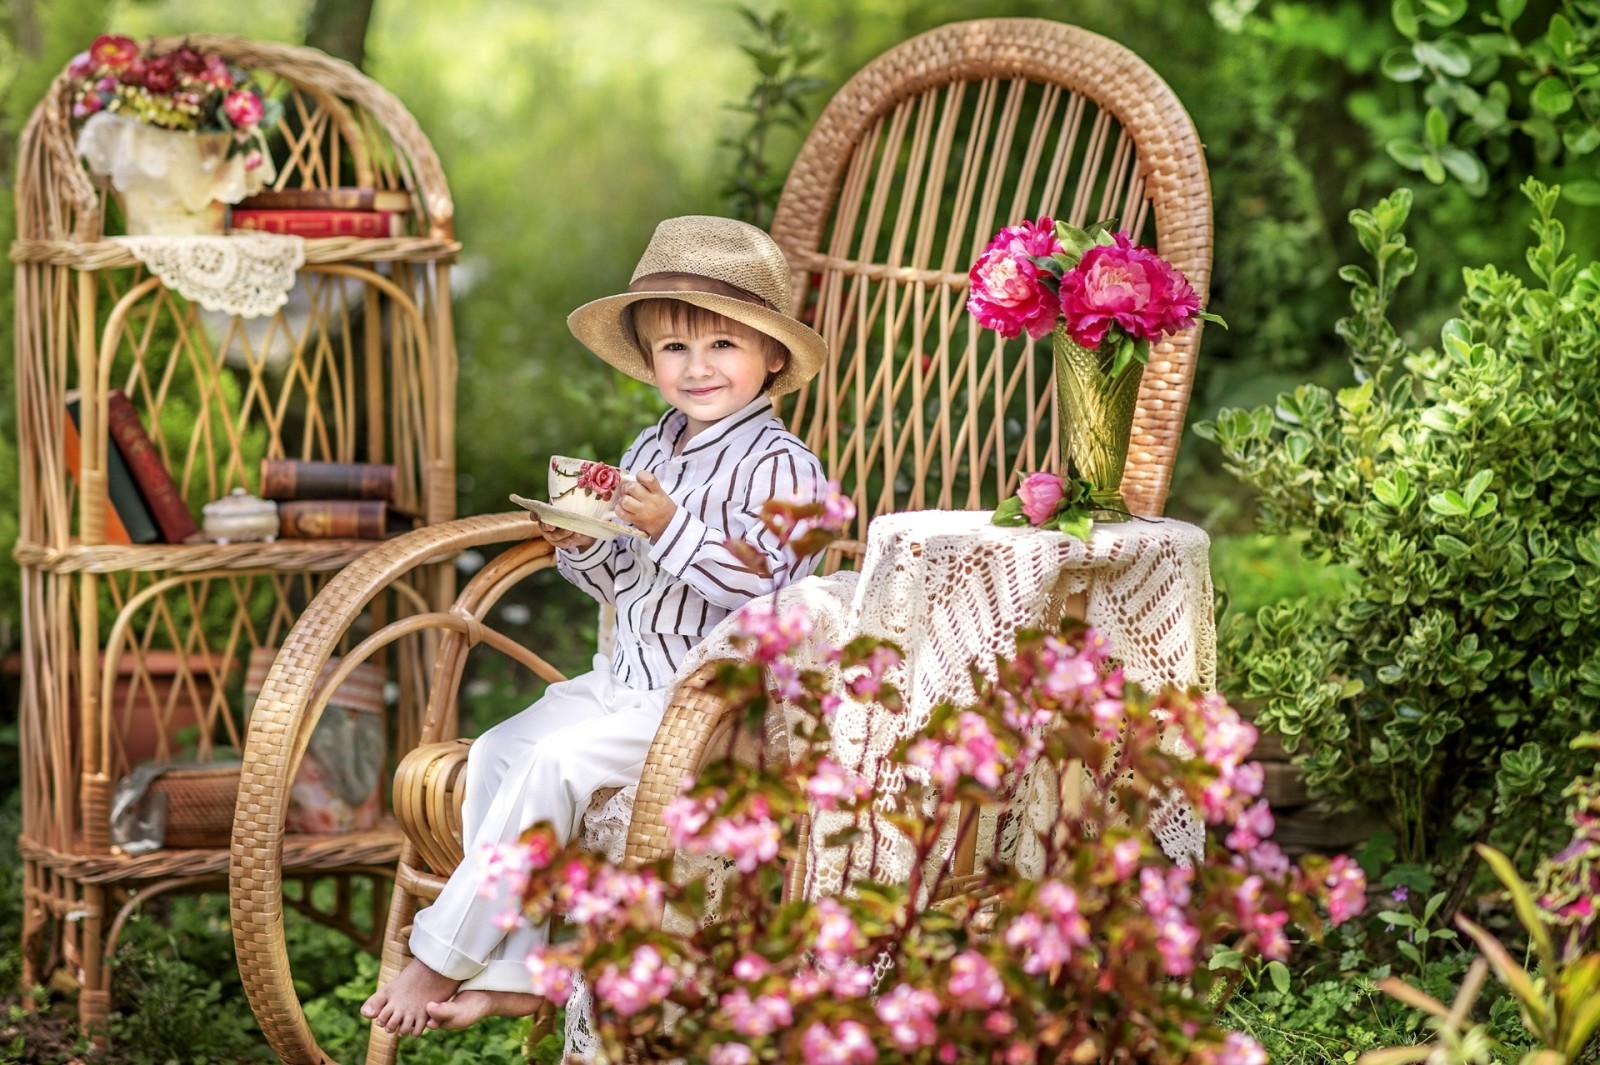 夏季, 图书, 花卉, 帽子, 花园, 男孩, 椅子, 喜悦